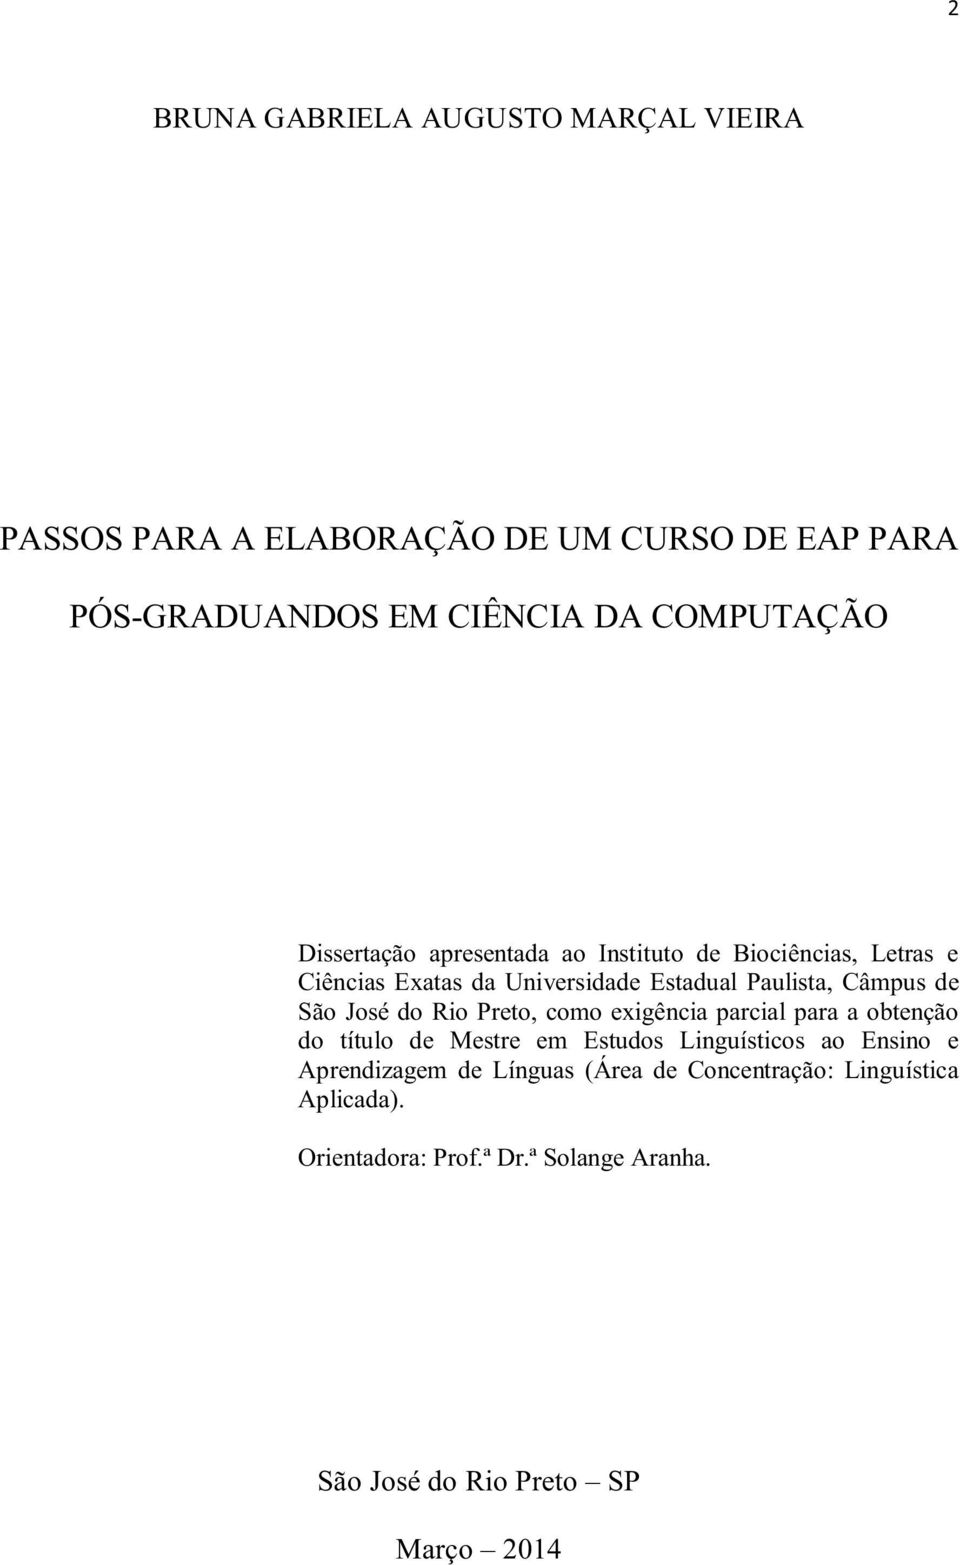 José do Rio Preto, como exigência parcial para a obtenção do título de Mestre em Estudos Linguísticos ao Ensino e Aprendizagem